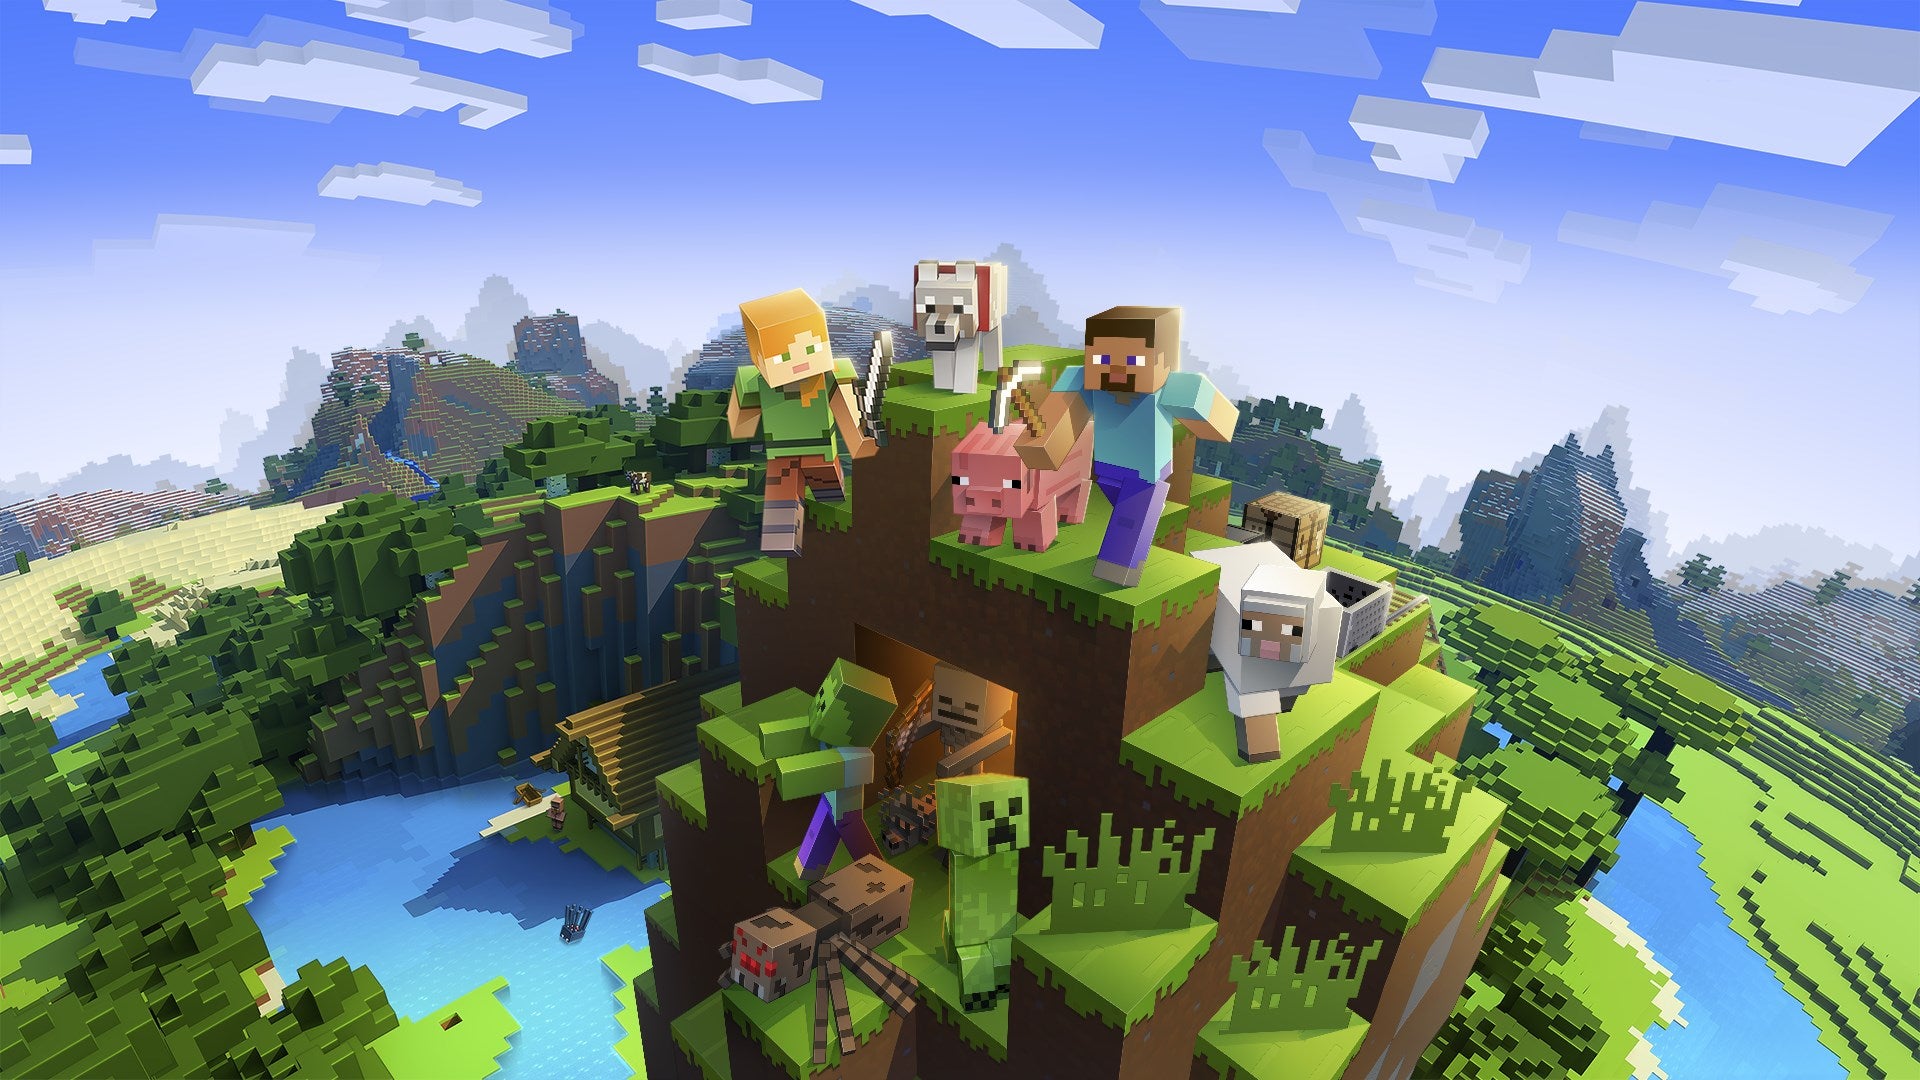 Minecraft has sold 176 million copies worldwide | GamesIndustry.biz